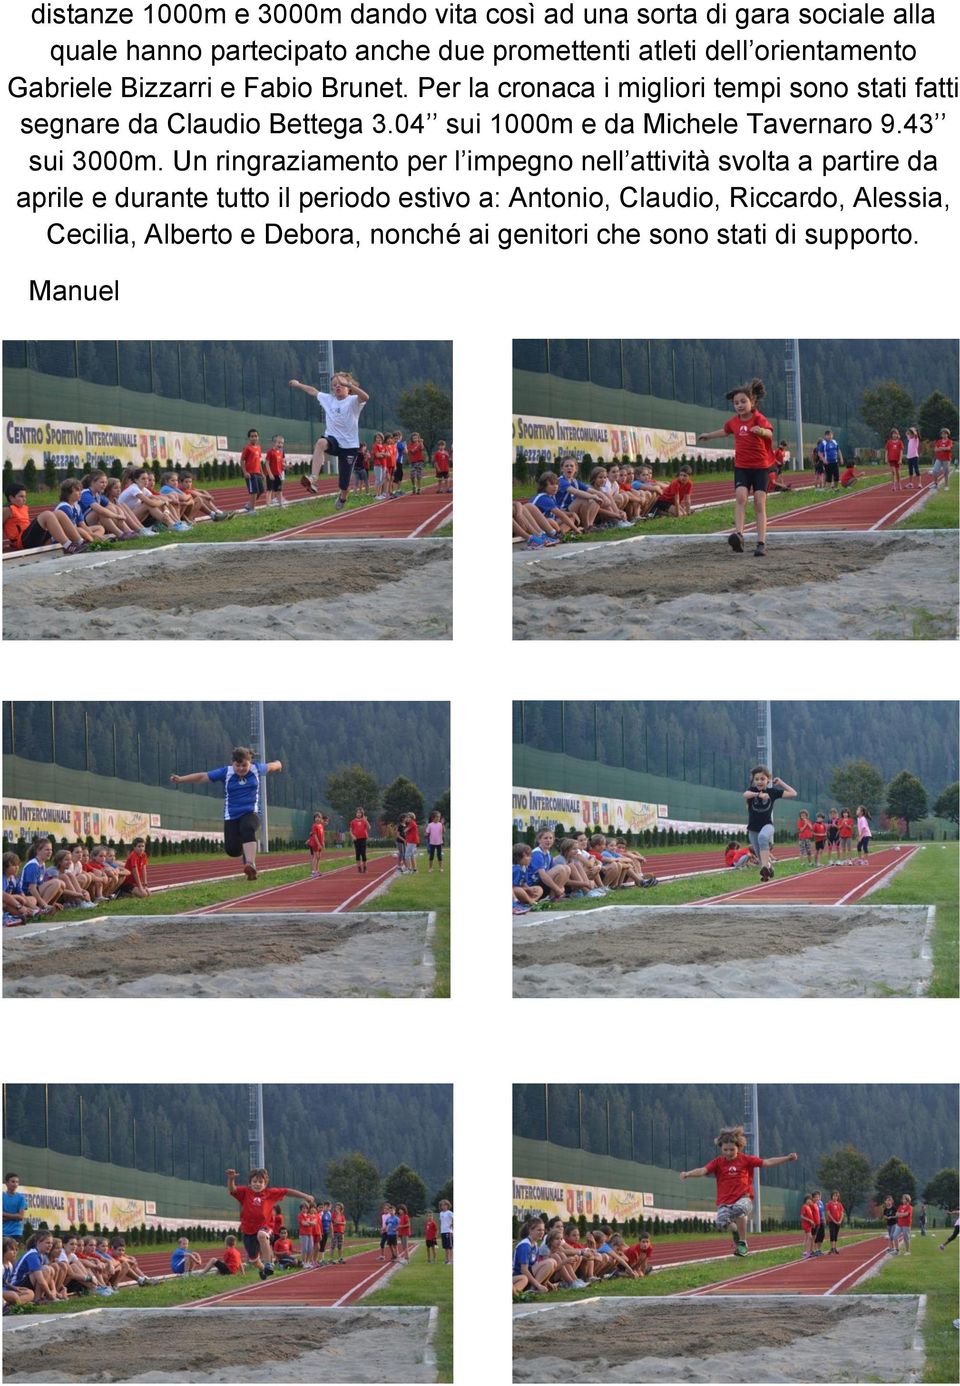 04 sui 1000m e da Michele Tavernaro 9.43 sui 3000m.